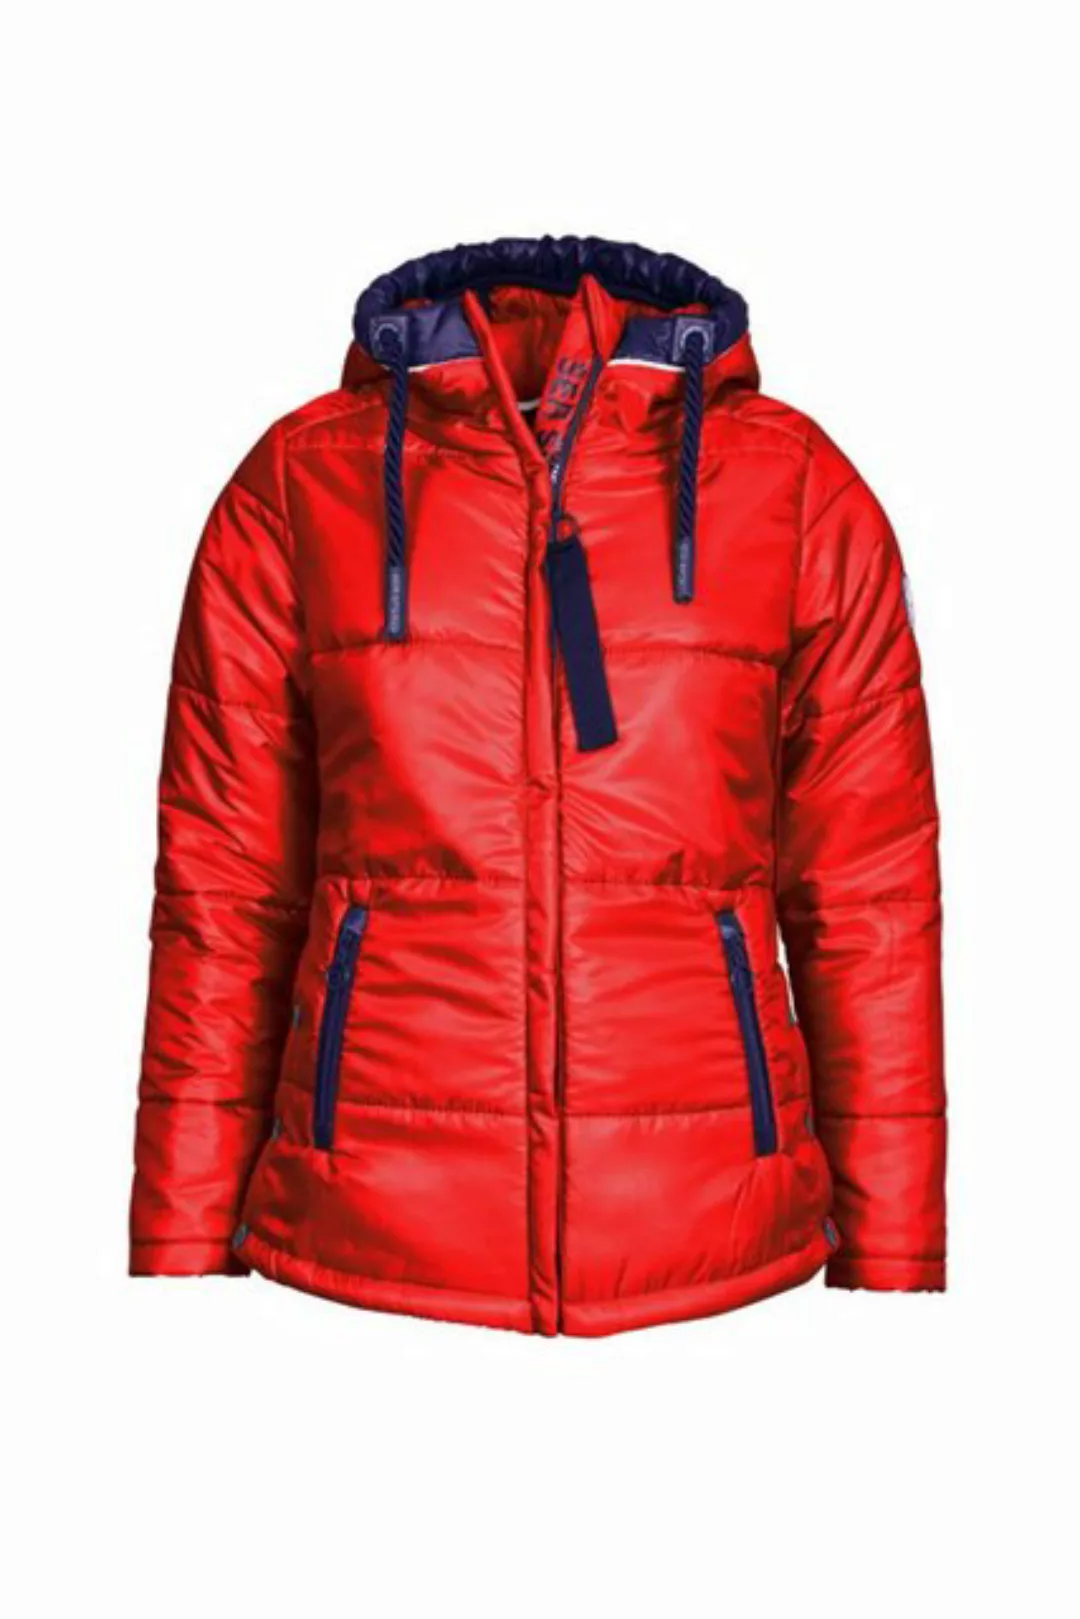 SER Steppjacke Jacke, Nylon Stepp, Kapuze W9230300 auch in großen Größen günstig online kaufen